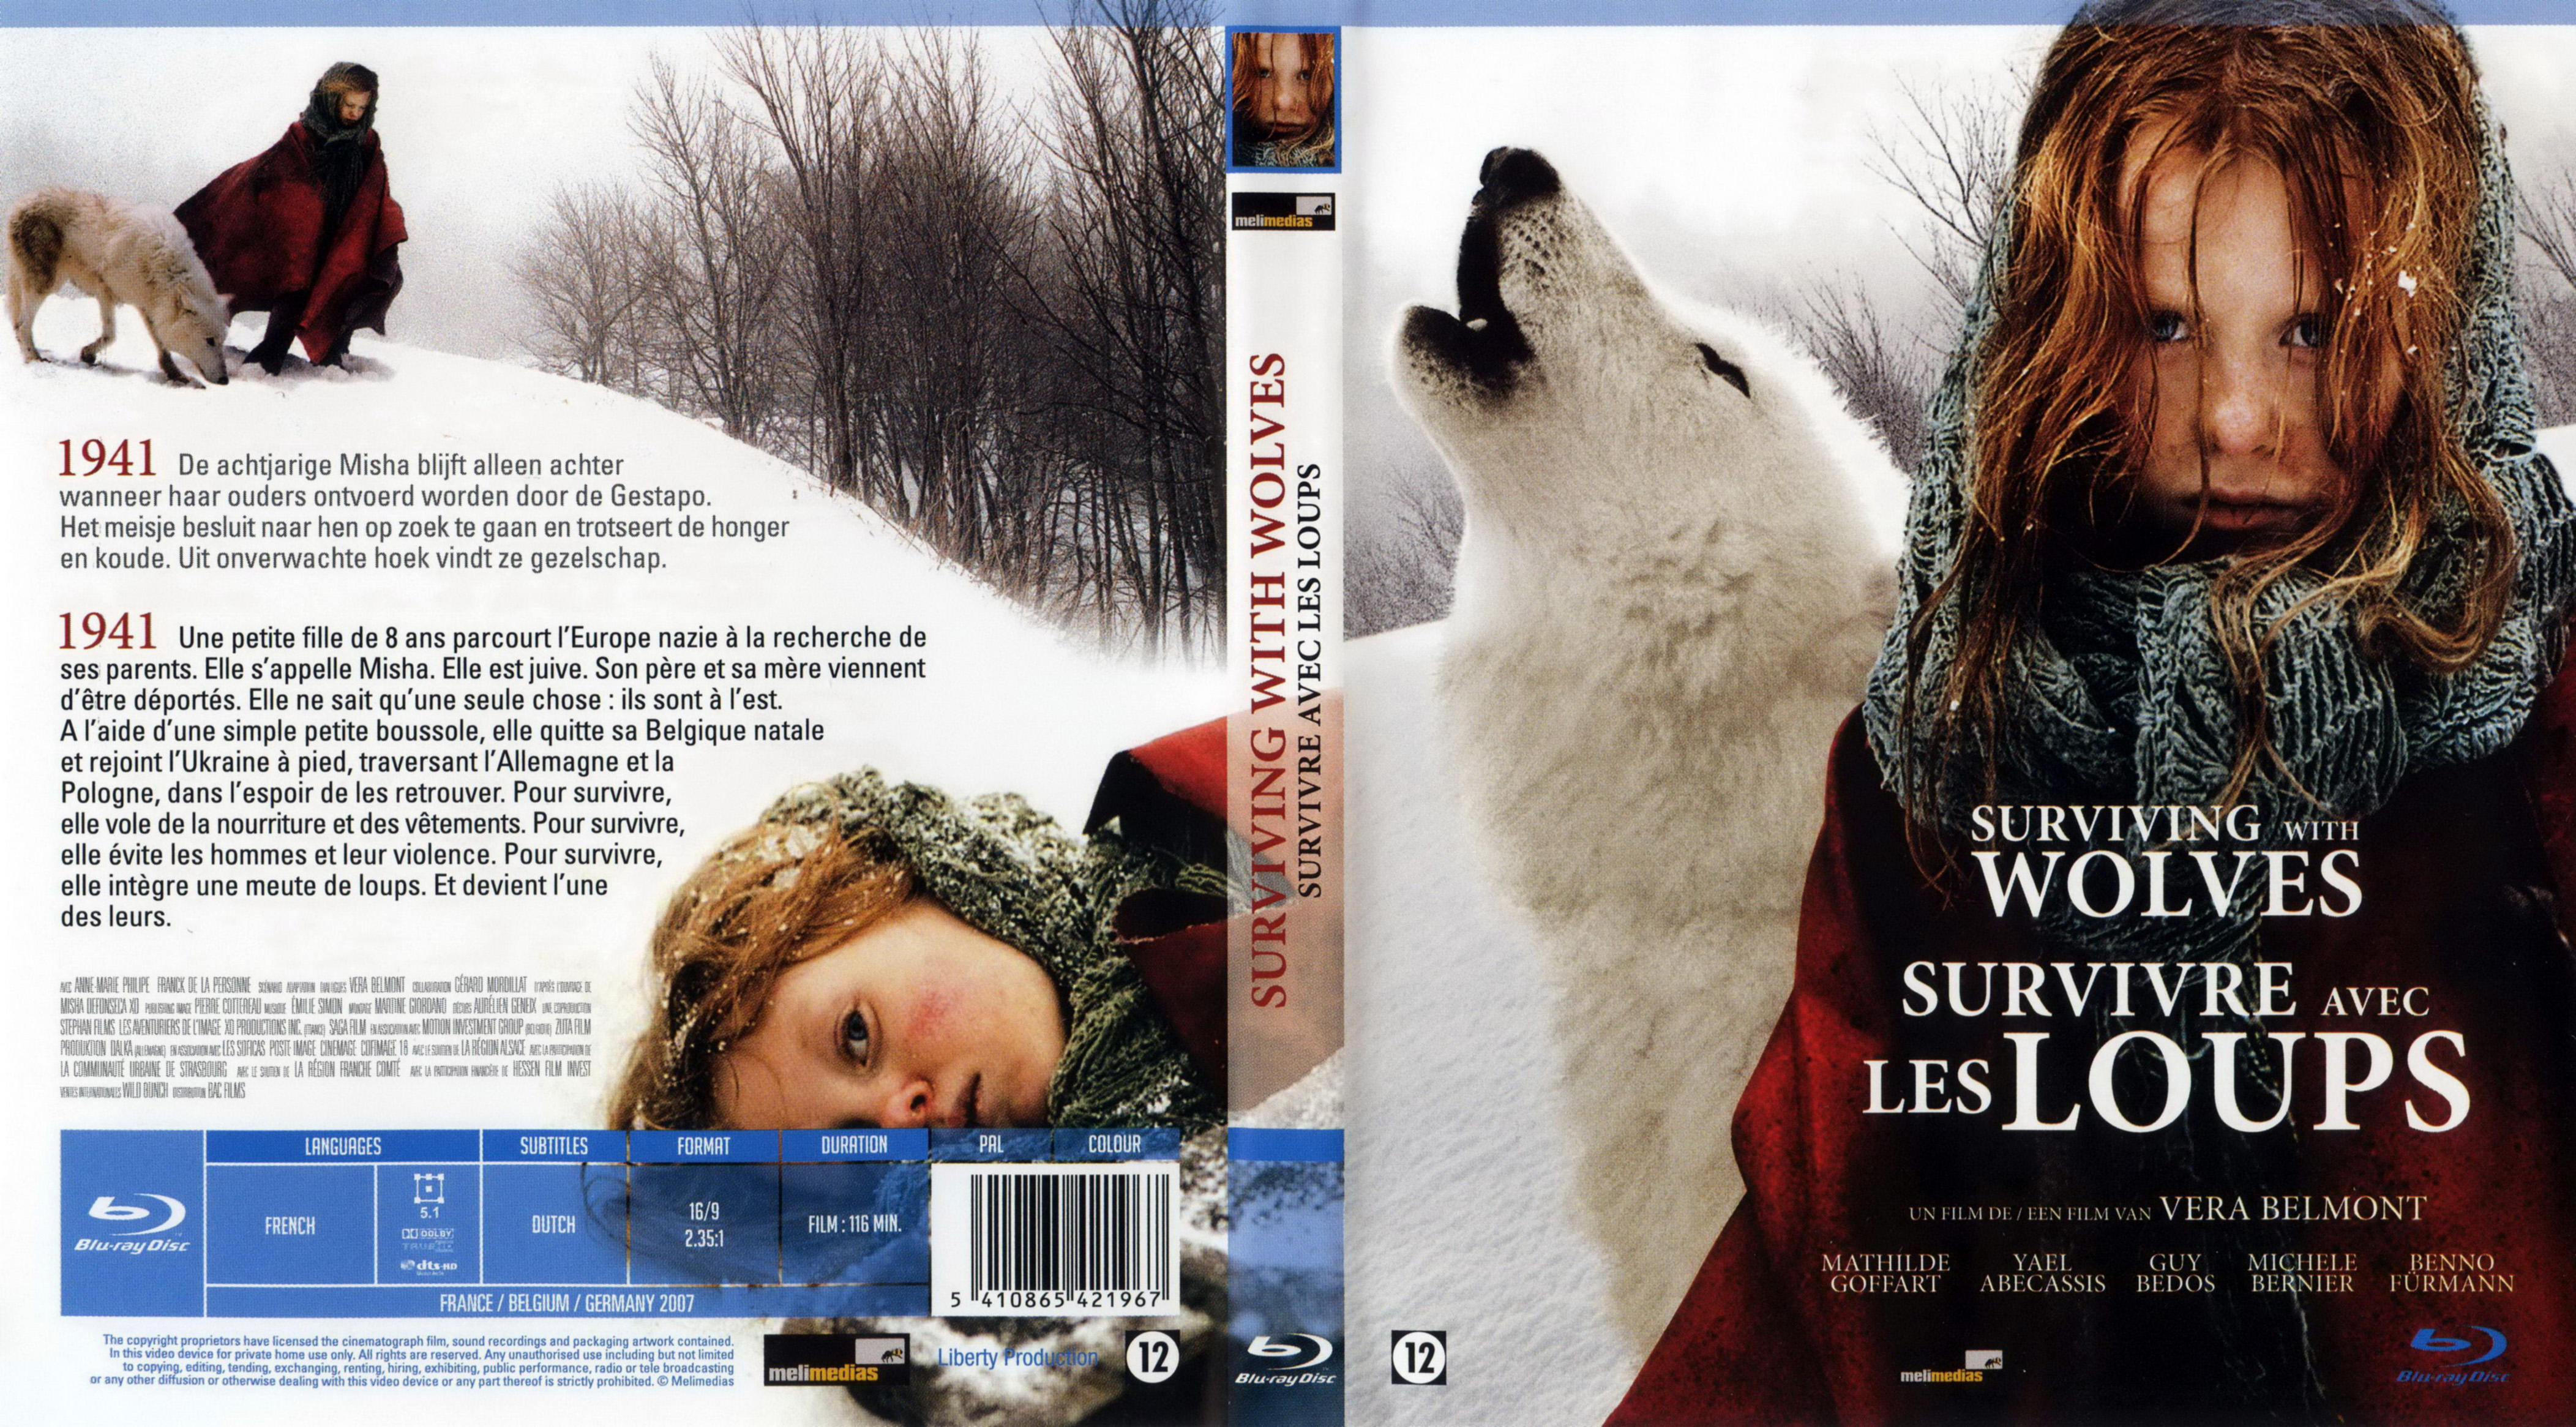 Jaquette DVD Survivre avec les loups (BLU-RAY)